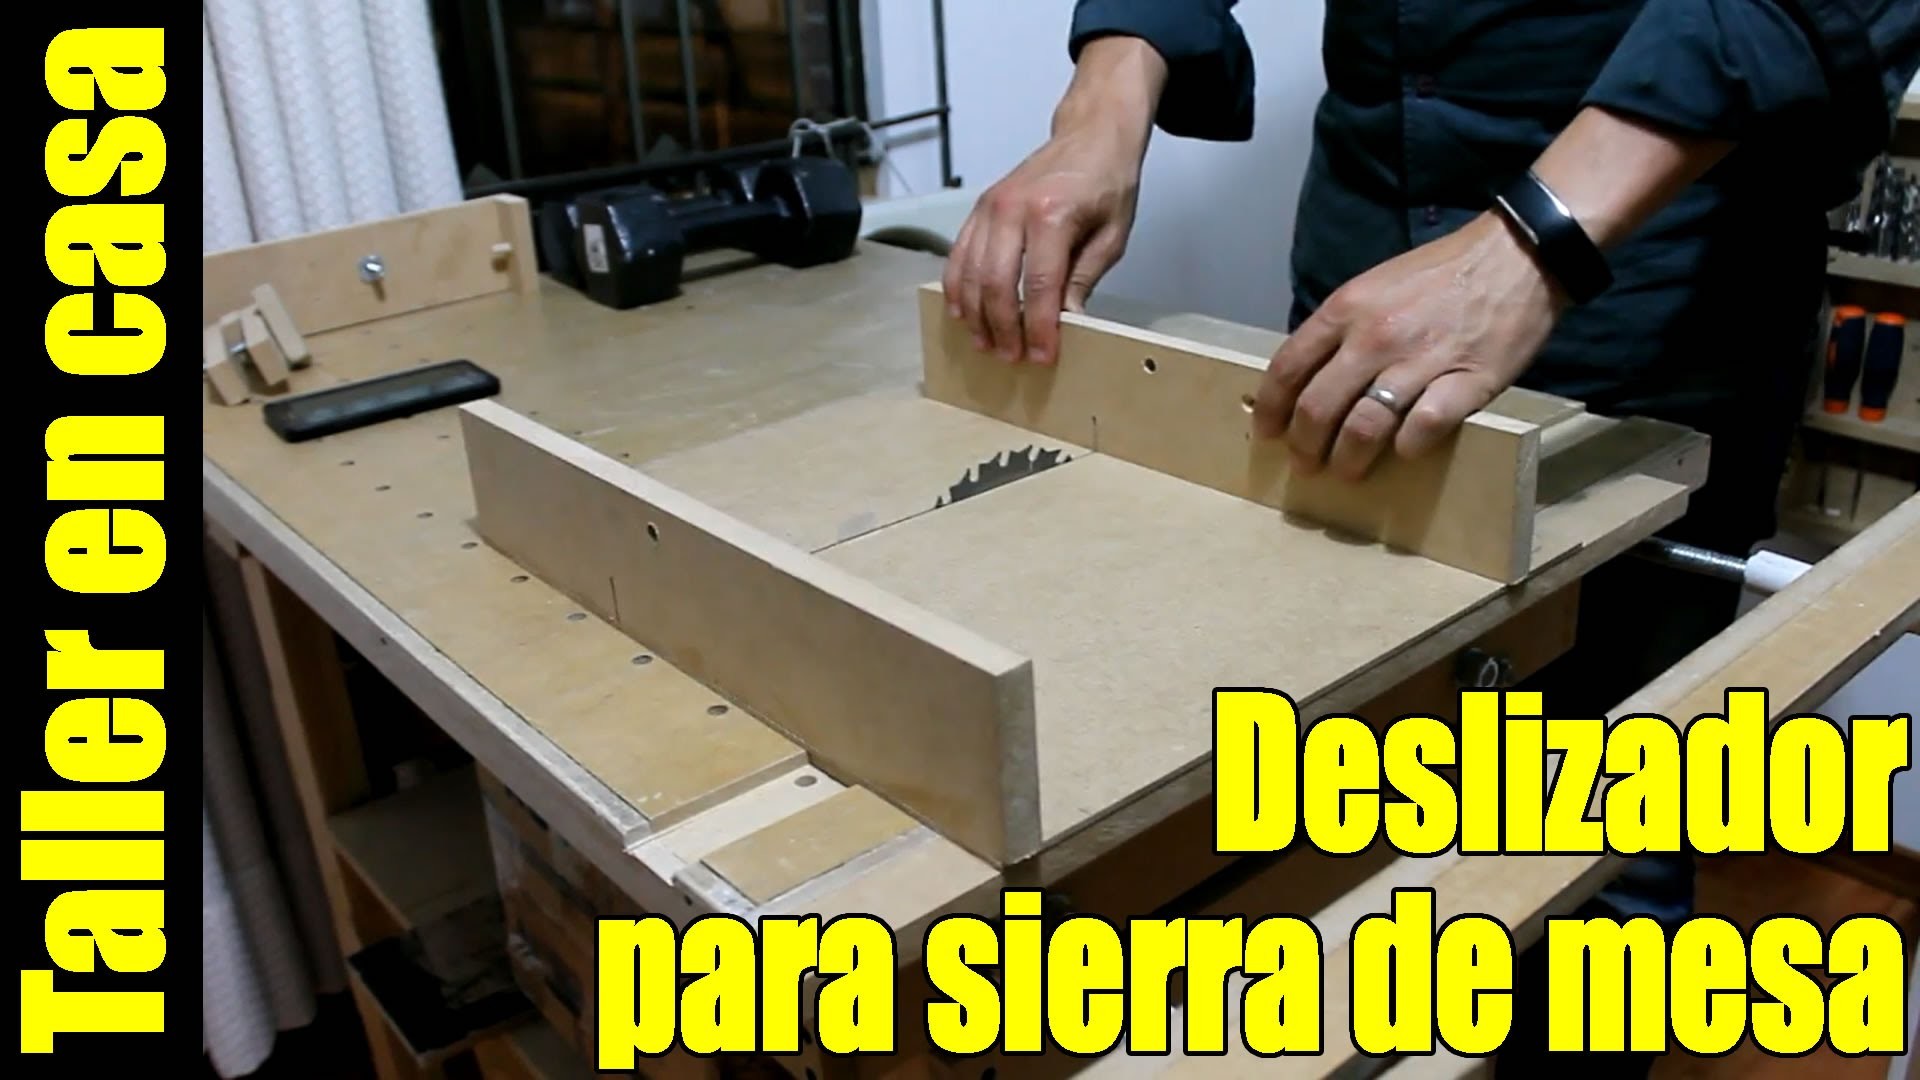 DIY Sierra de banco Parte 5.6 - Deslizador sierra circular de mesa